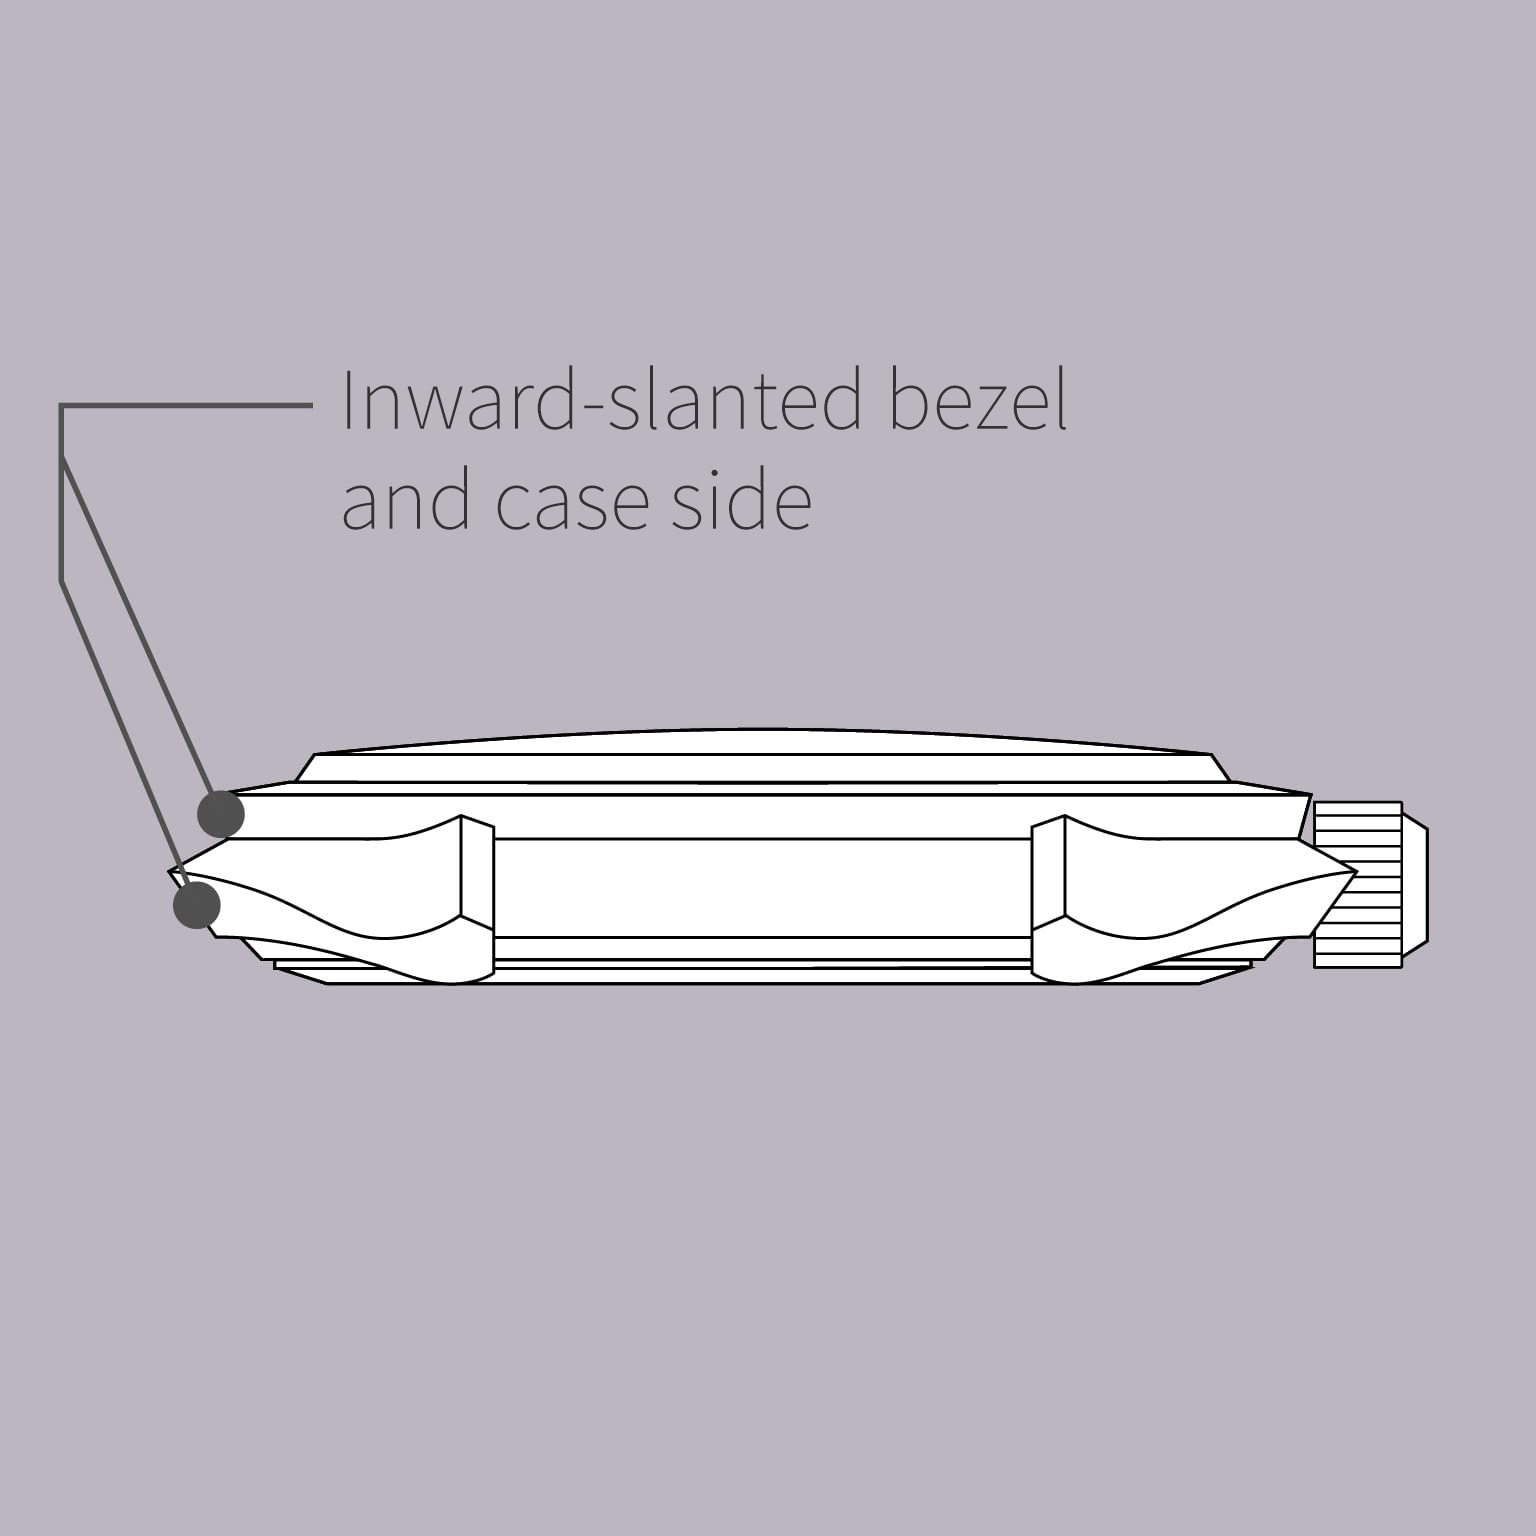 Inward-slanted bezel and case side